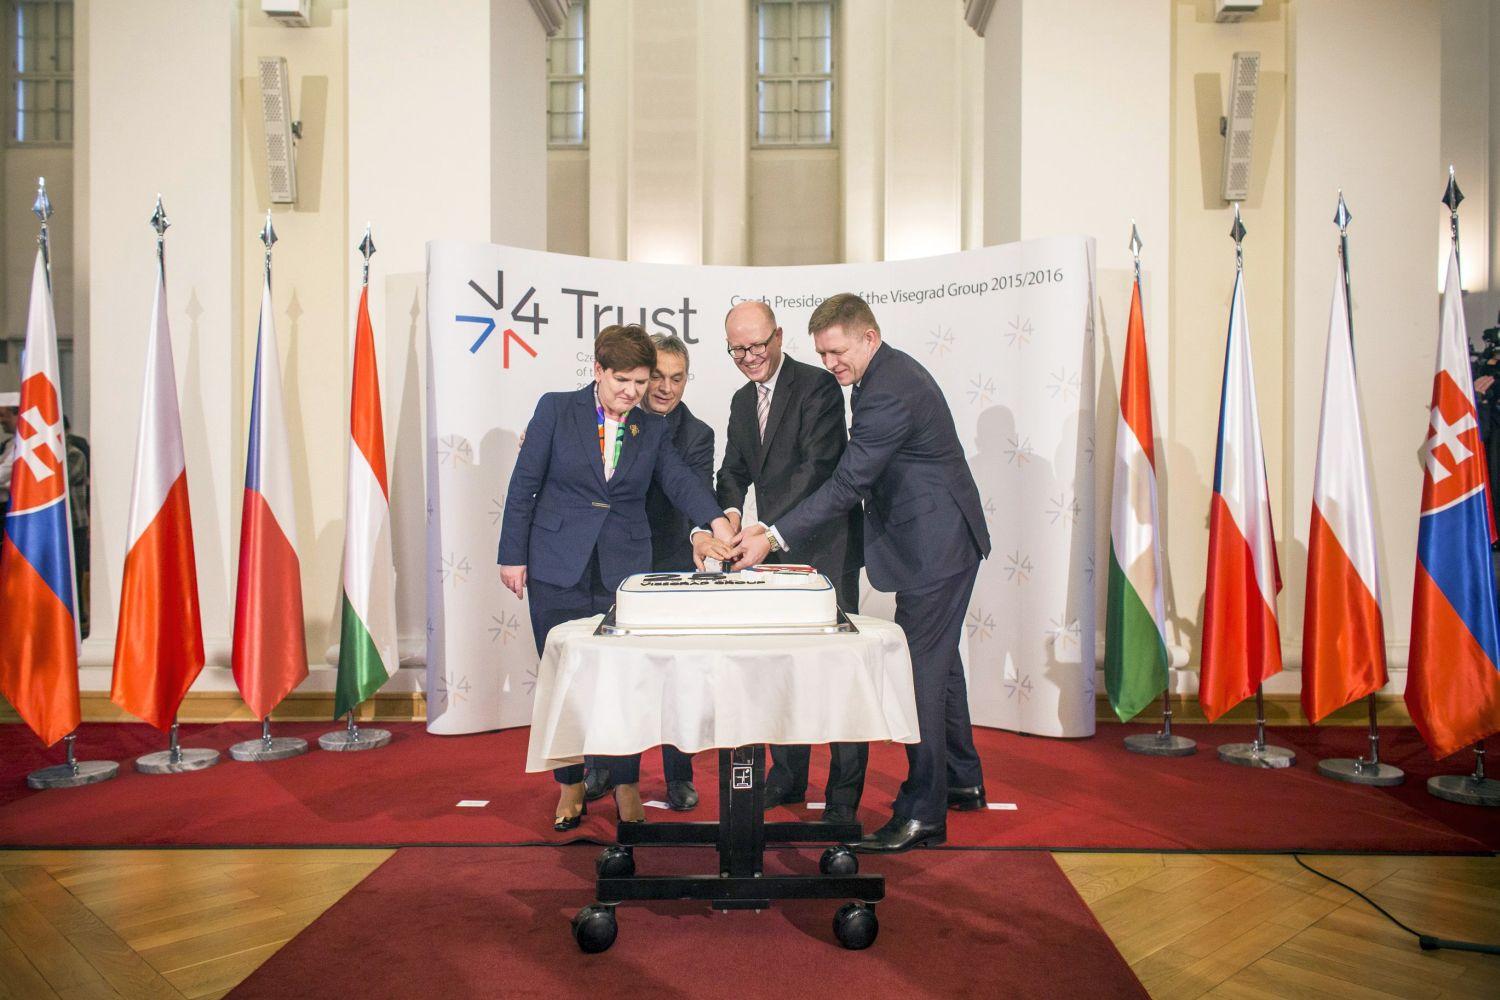 Beata Szydlo lengyel, Orbán Viktor magyar, Robert Fico szlovák és Bohuslav Sobotka cseh miniszterelnök